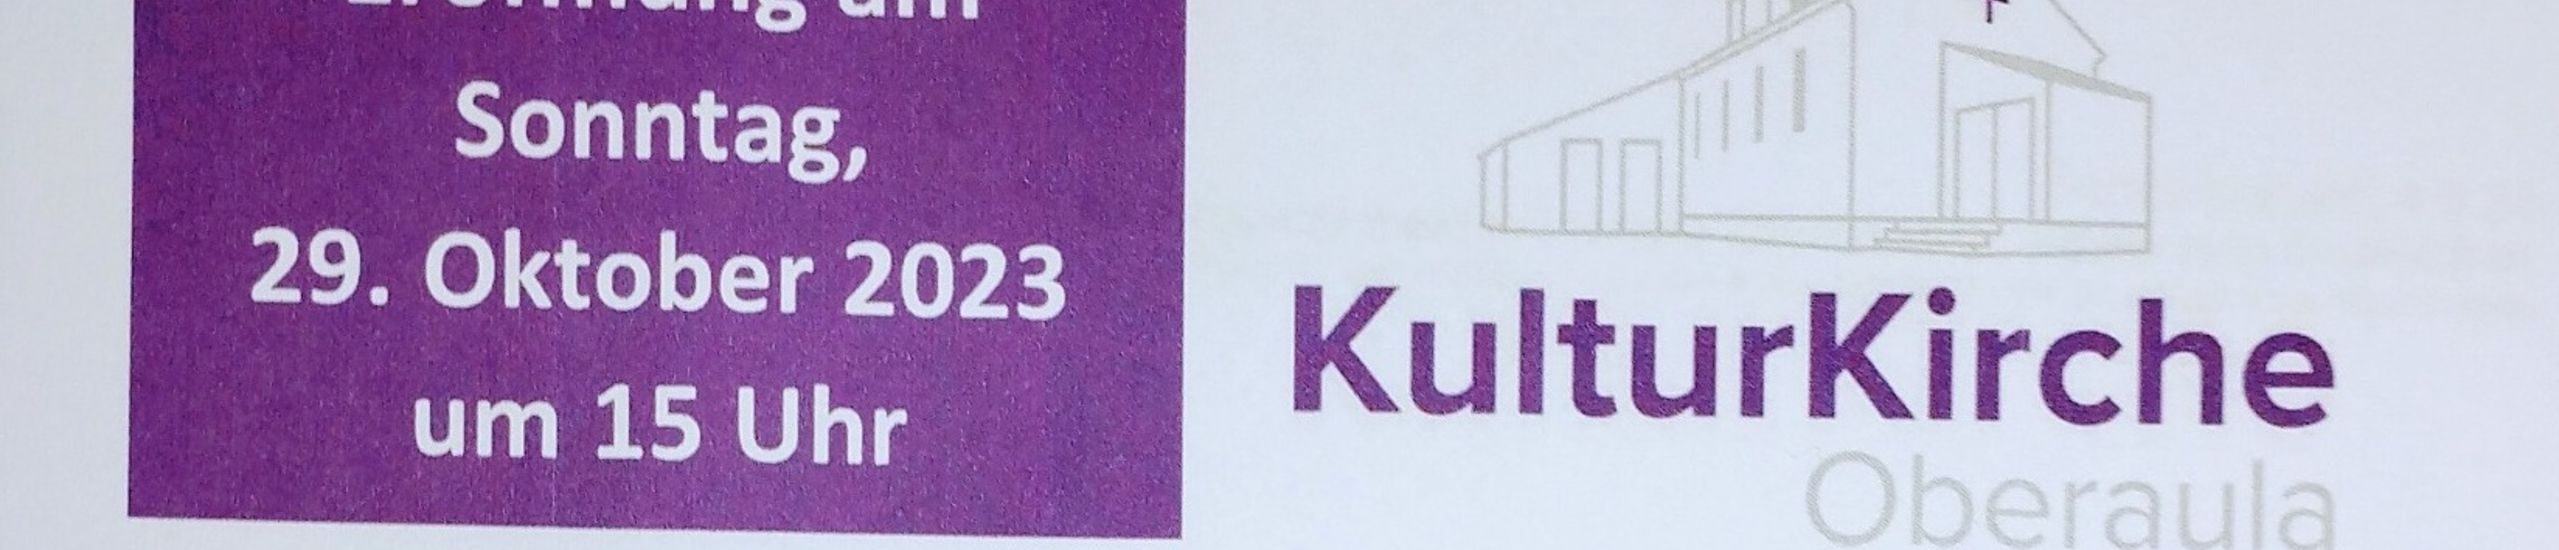 Eröffnung KulturKirche Oberaula 2023